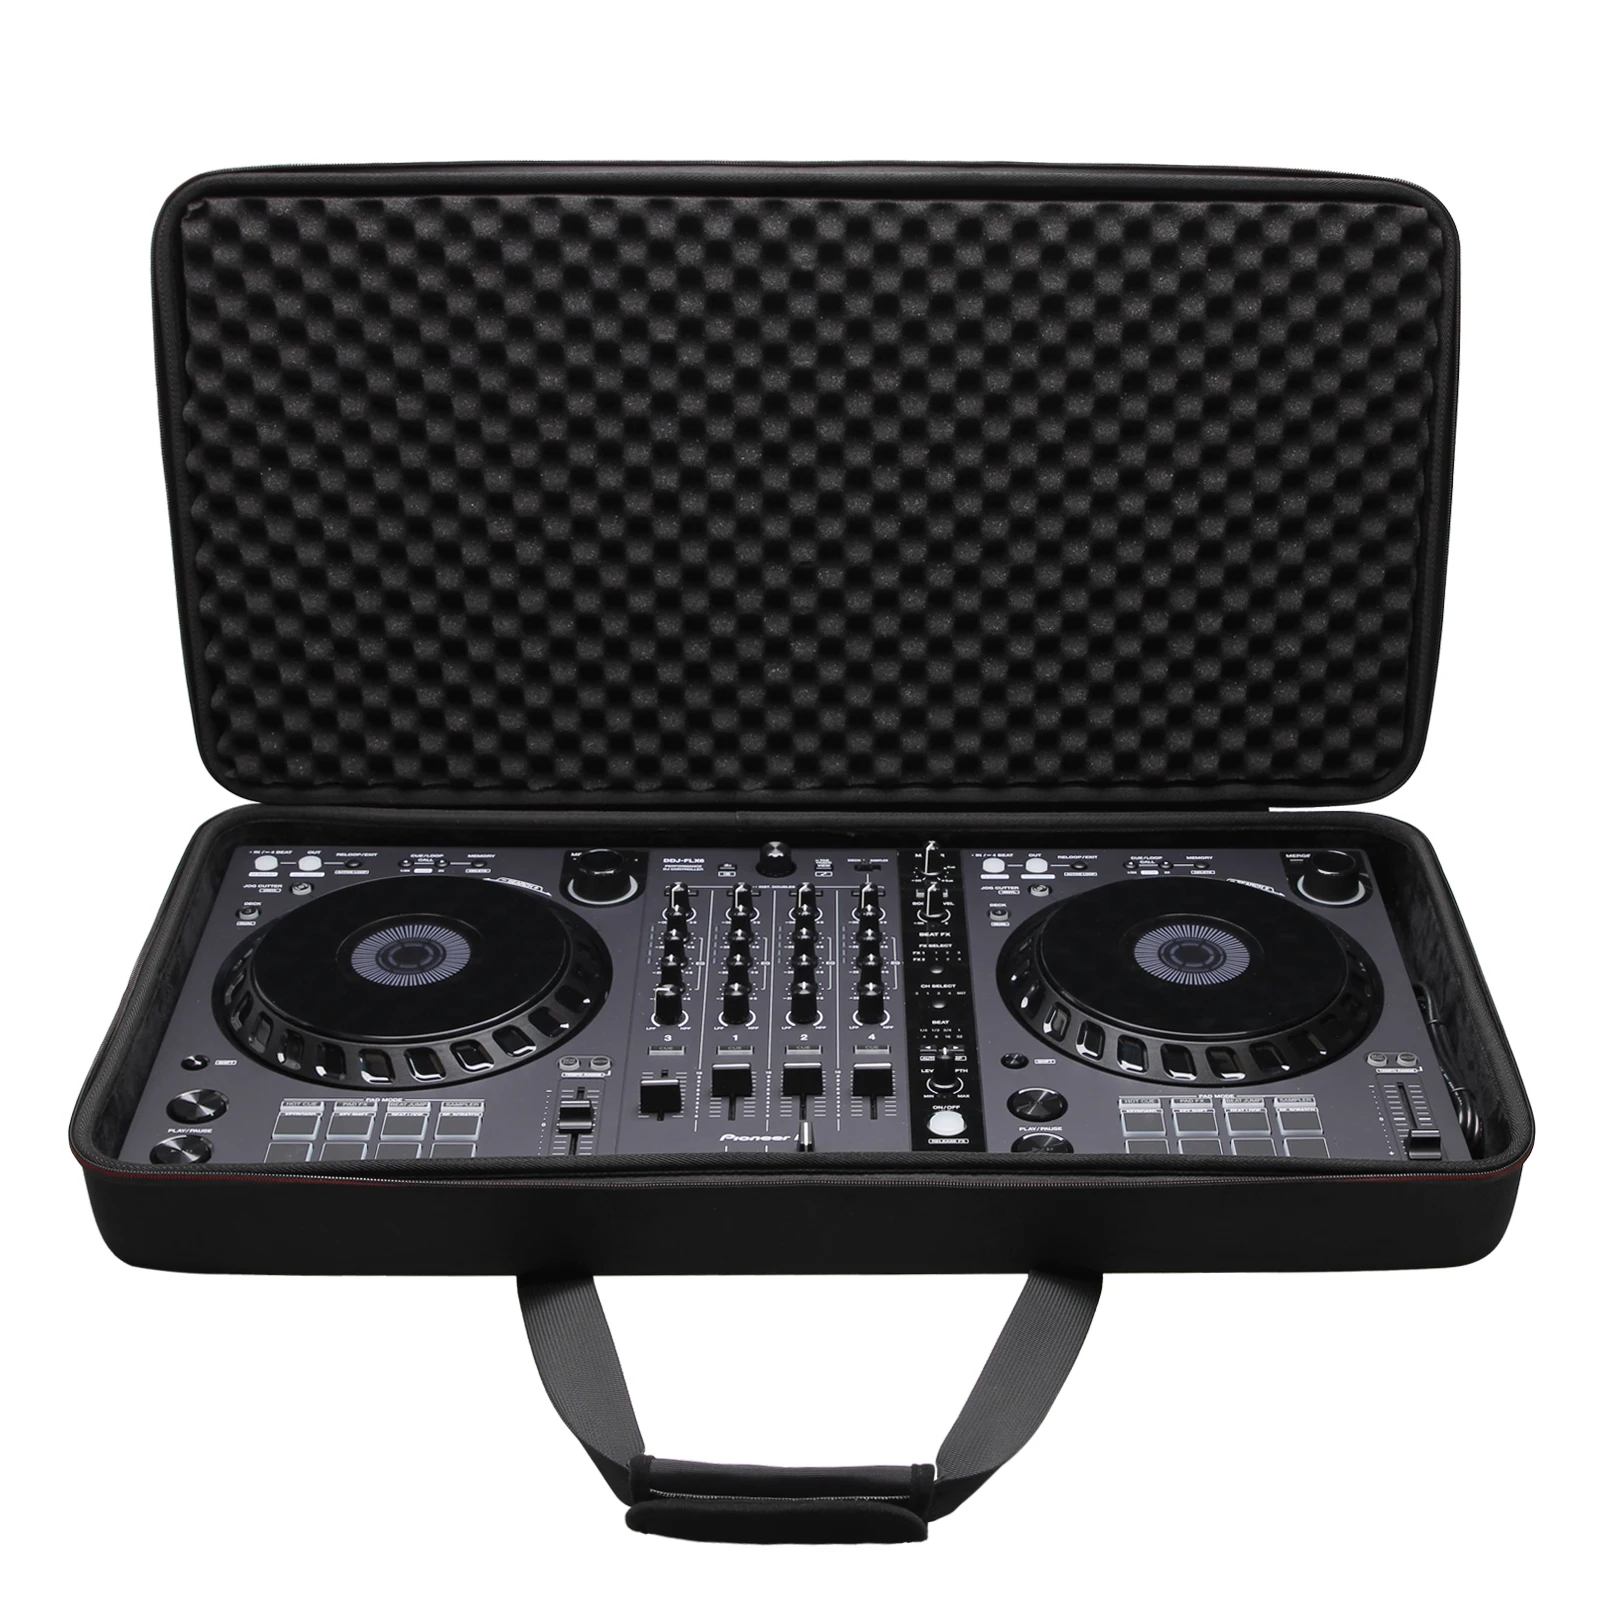 LTGEM pouzdro pro pionýr DJ DDJ-FLX6 4-deck rekordbox a serato DJ regulátor - cestovní pouzdro přenosné úložný skříňka